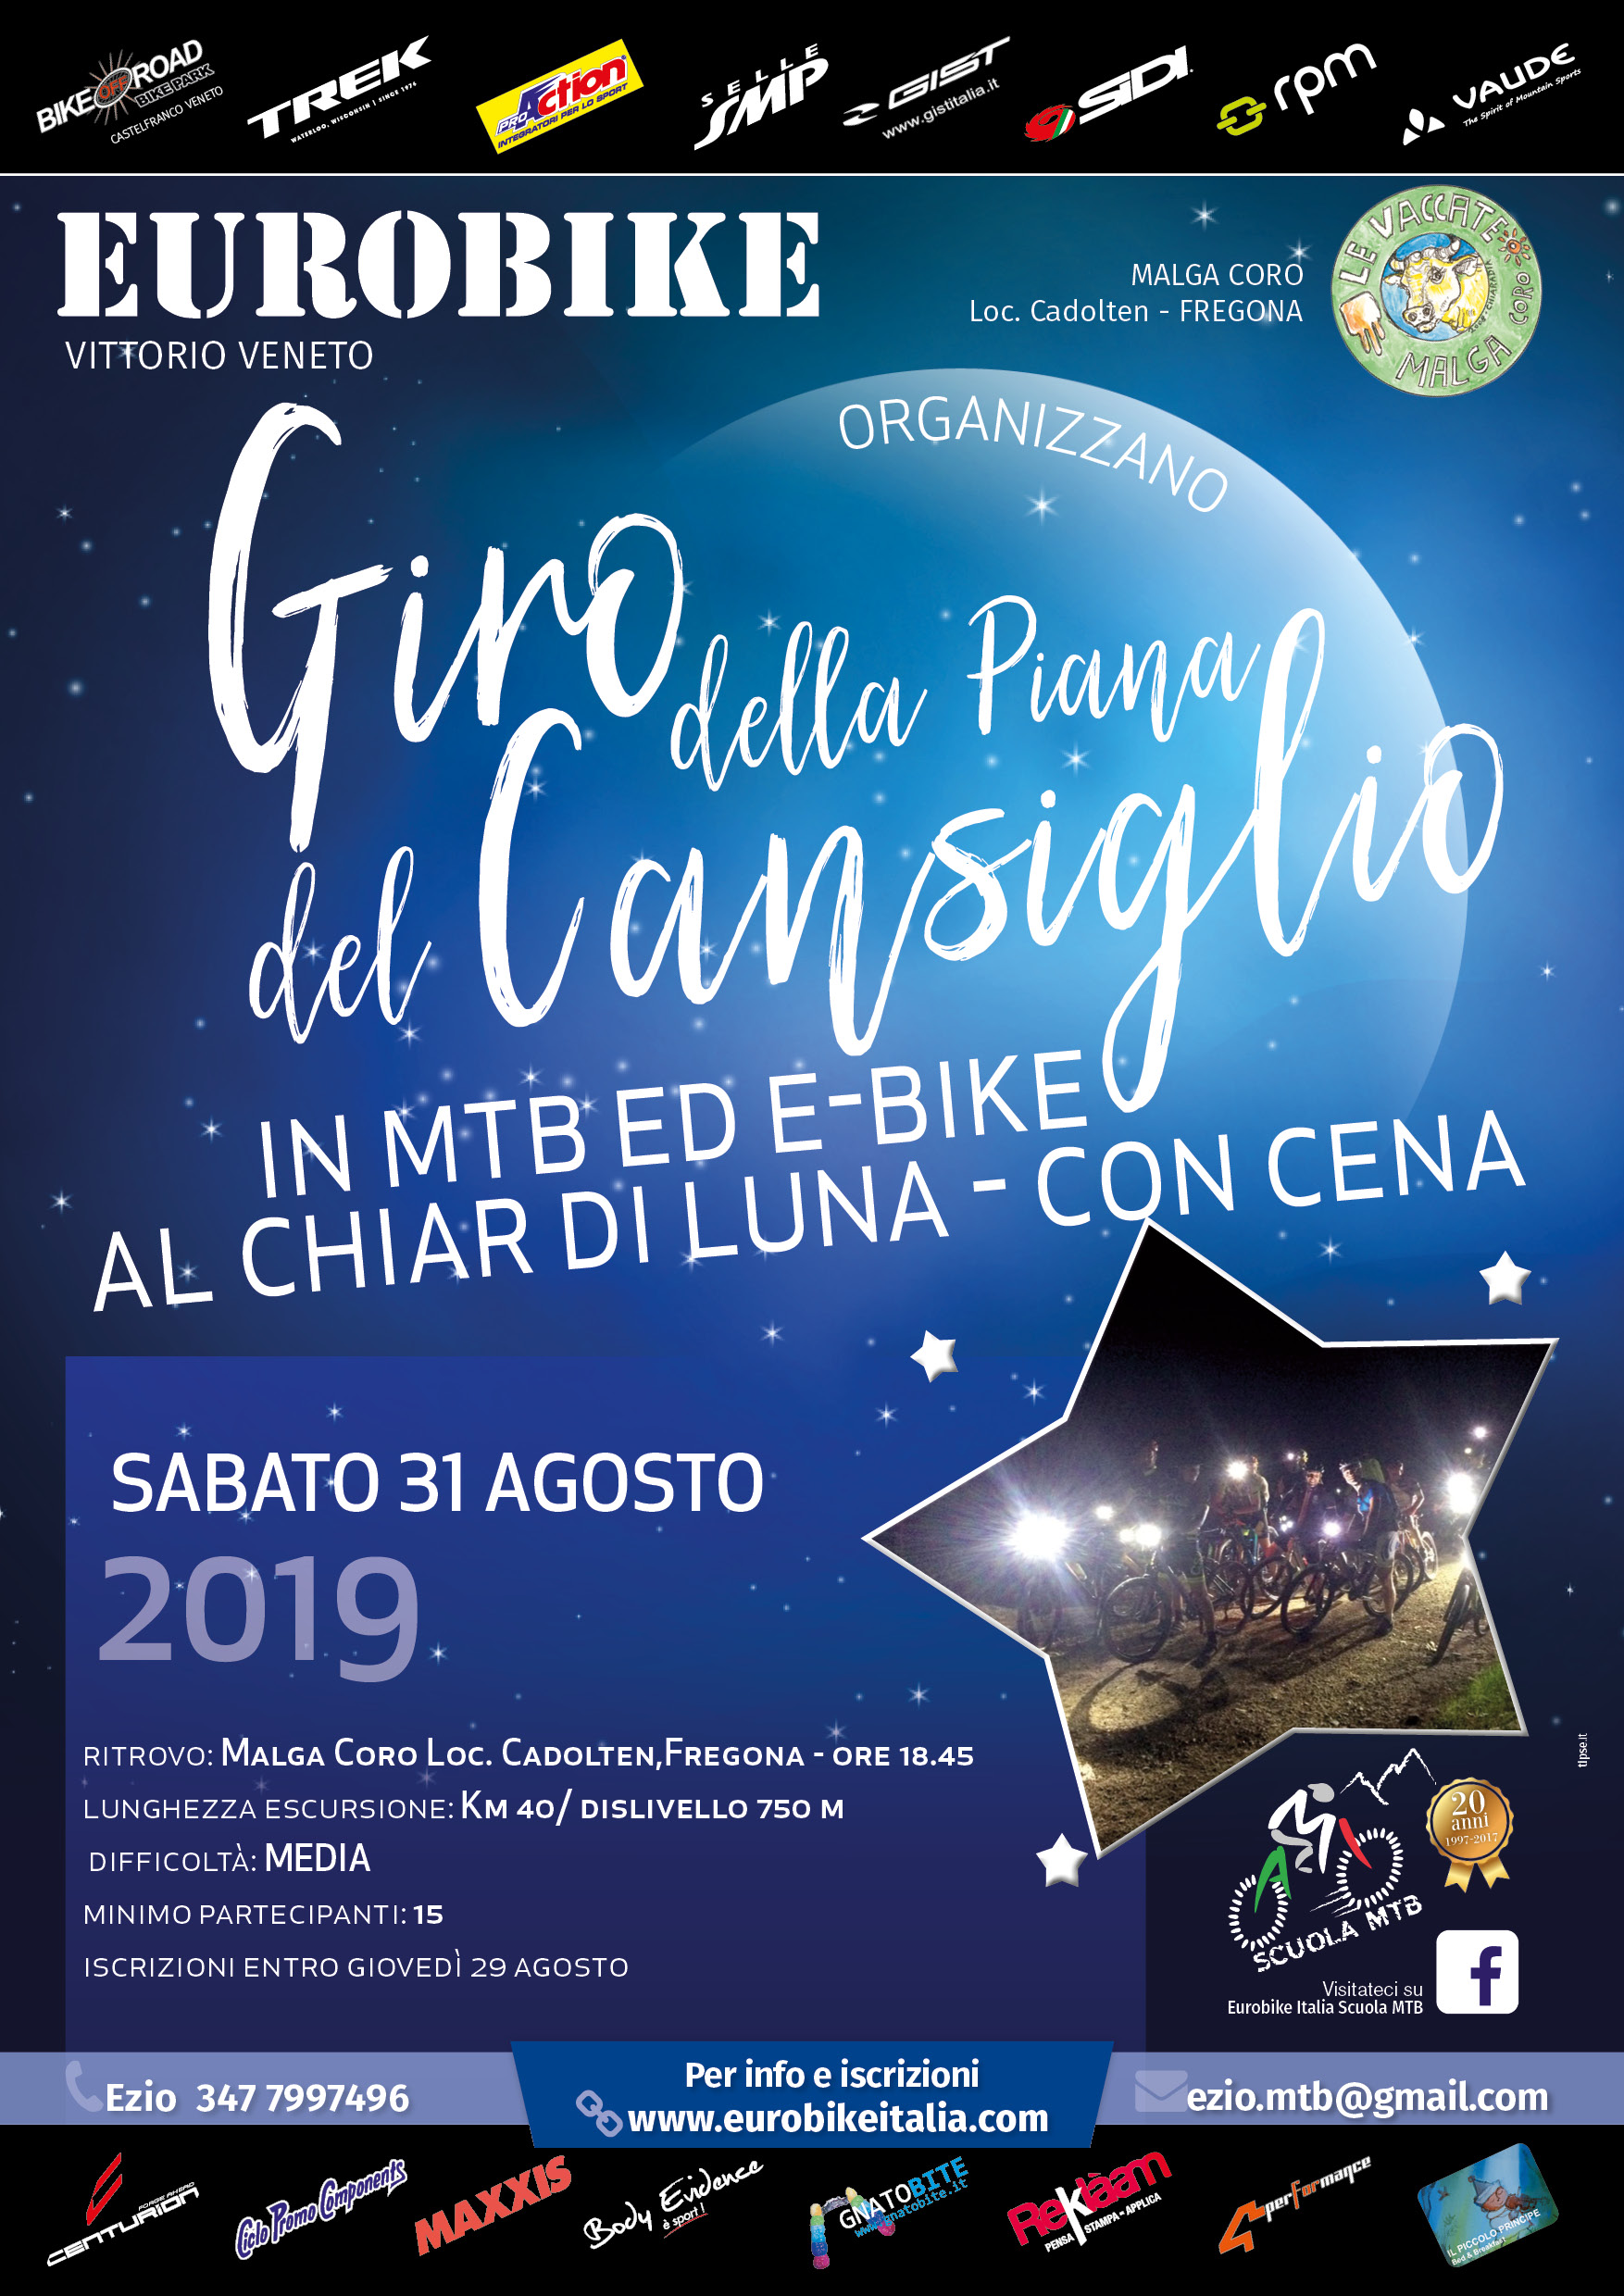 31.08.2019 Giro della Piana del Cansiglio al Chiar di Luna